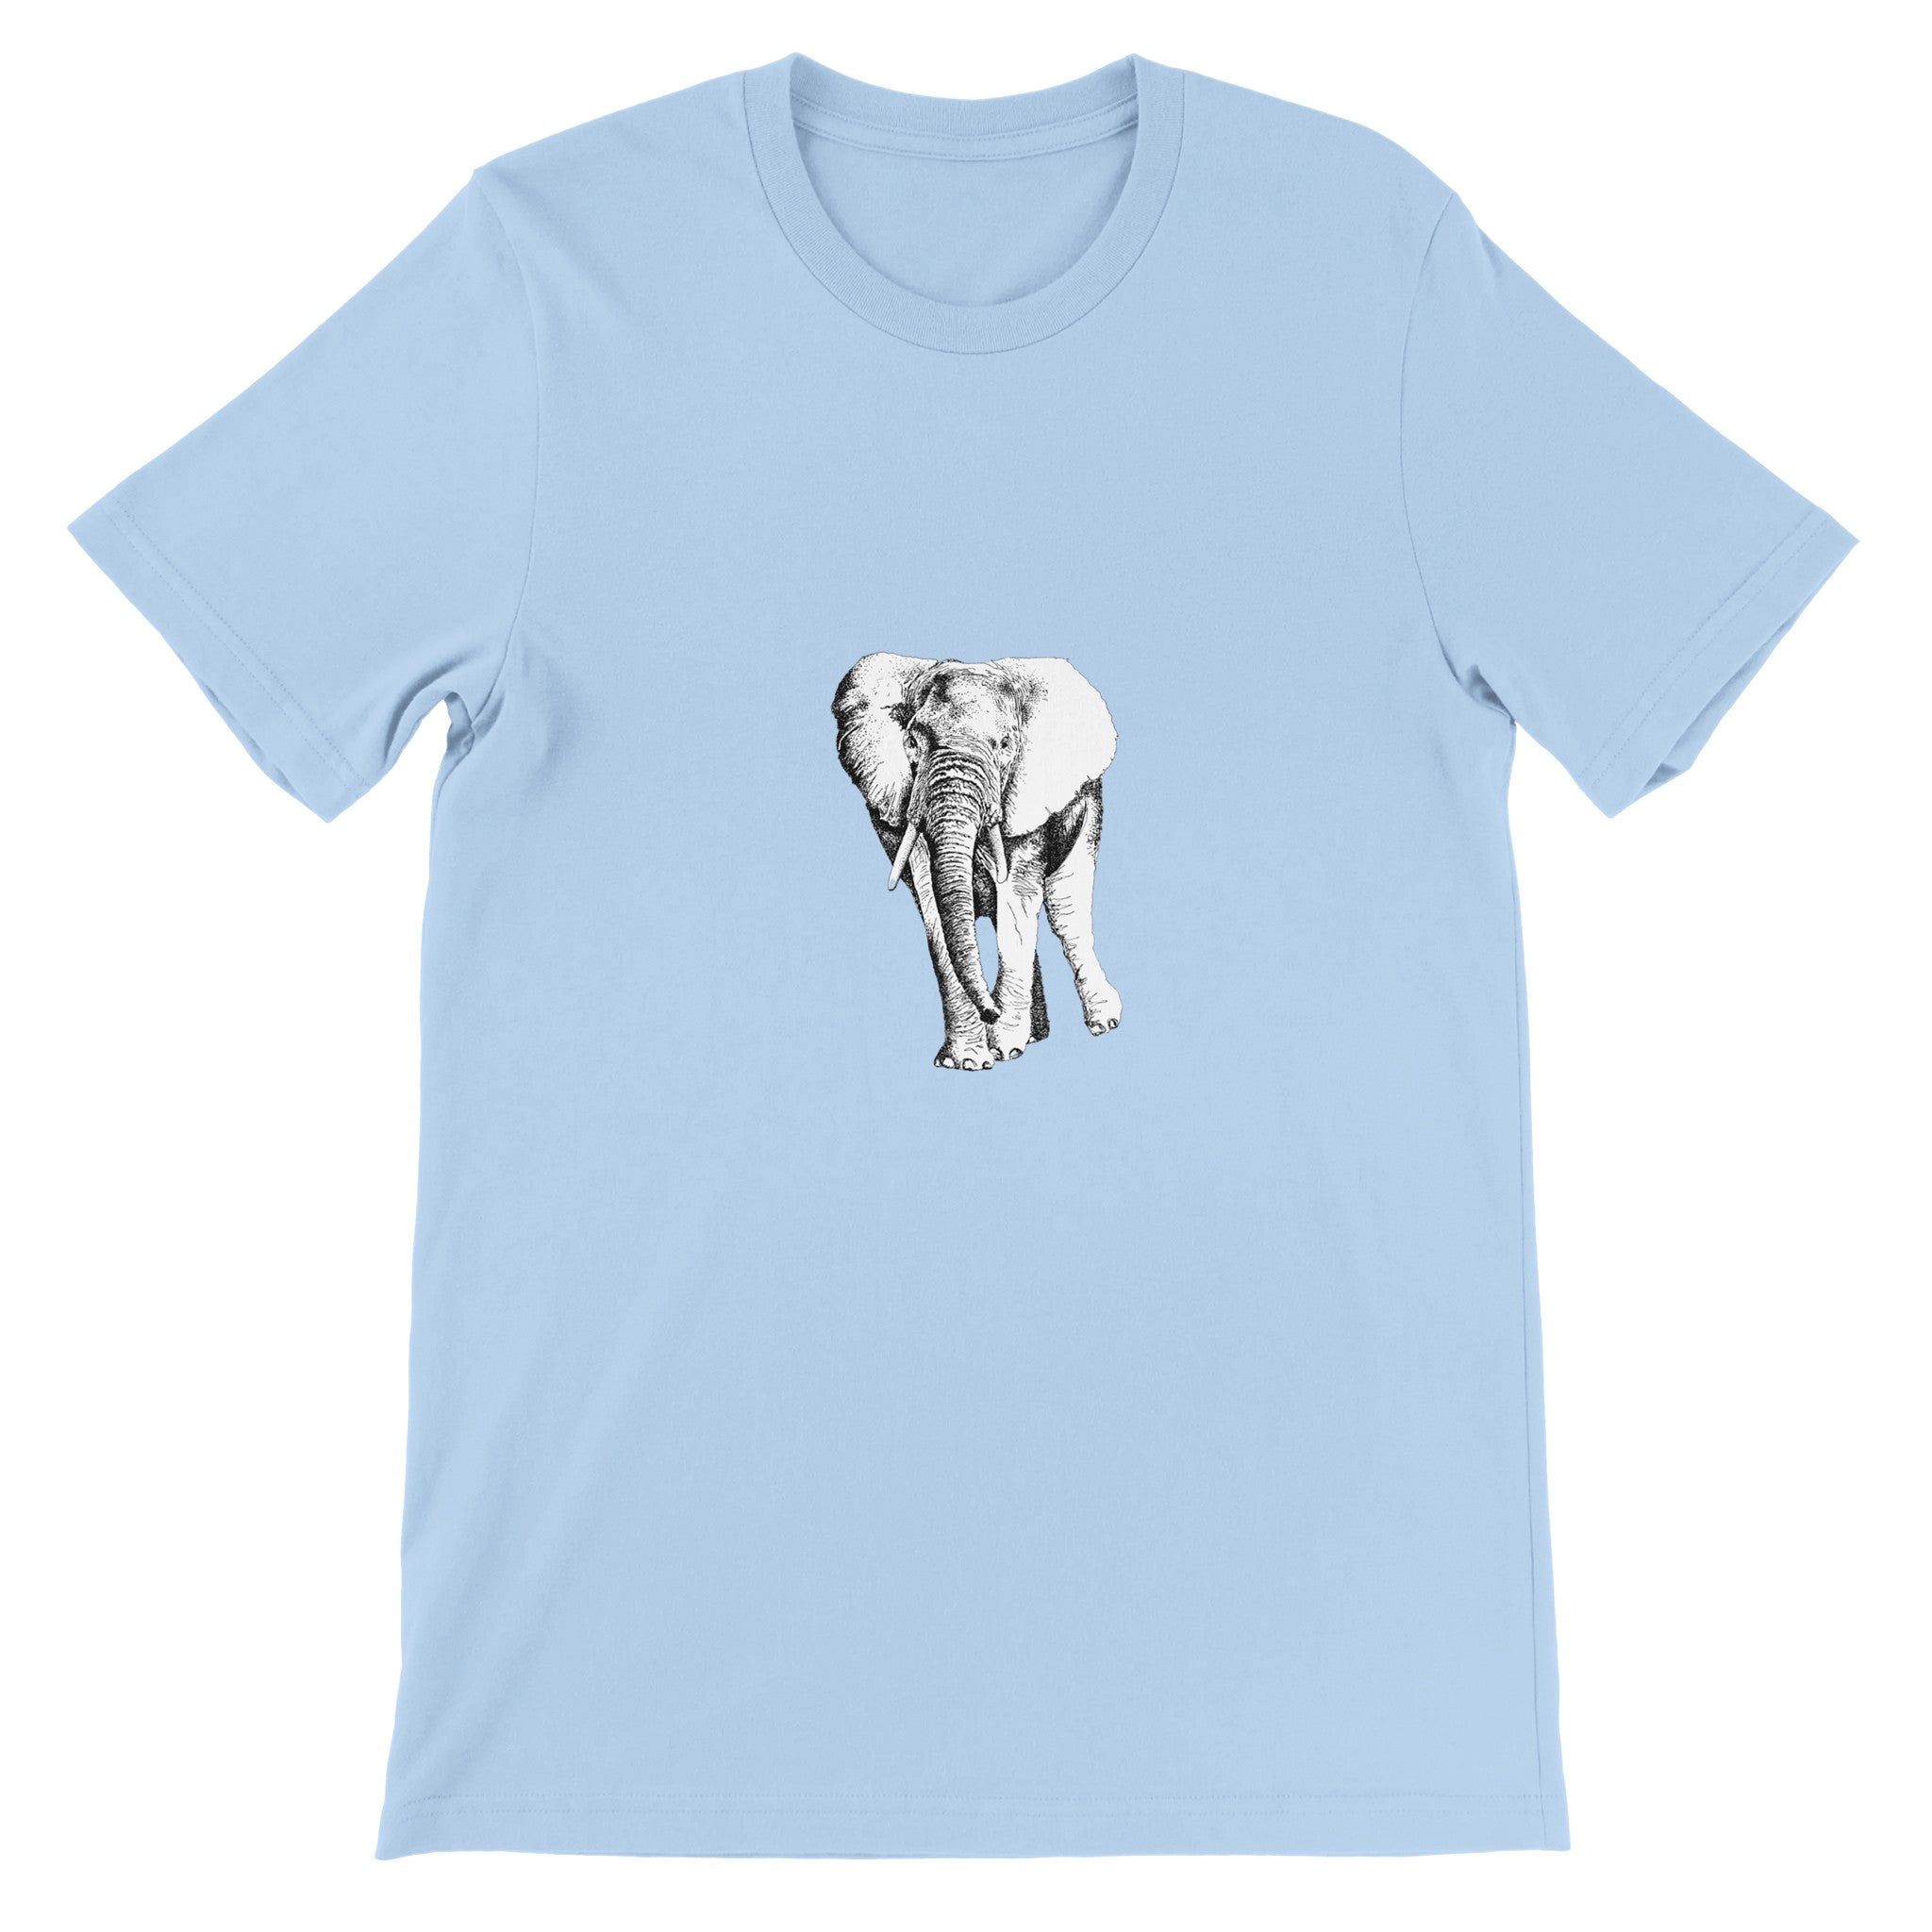 Elephant Illustration Crewneck T-shirt - Optimalprint